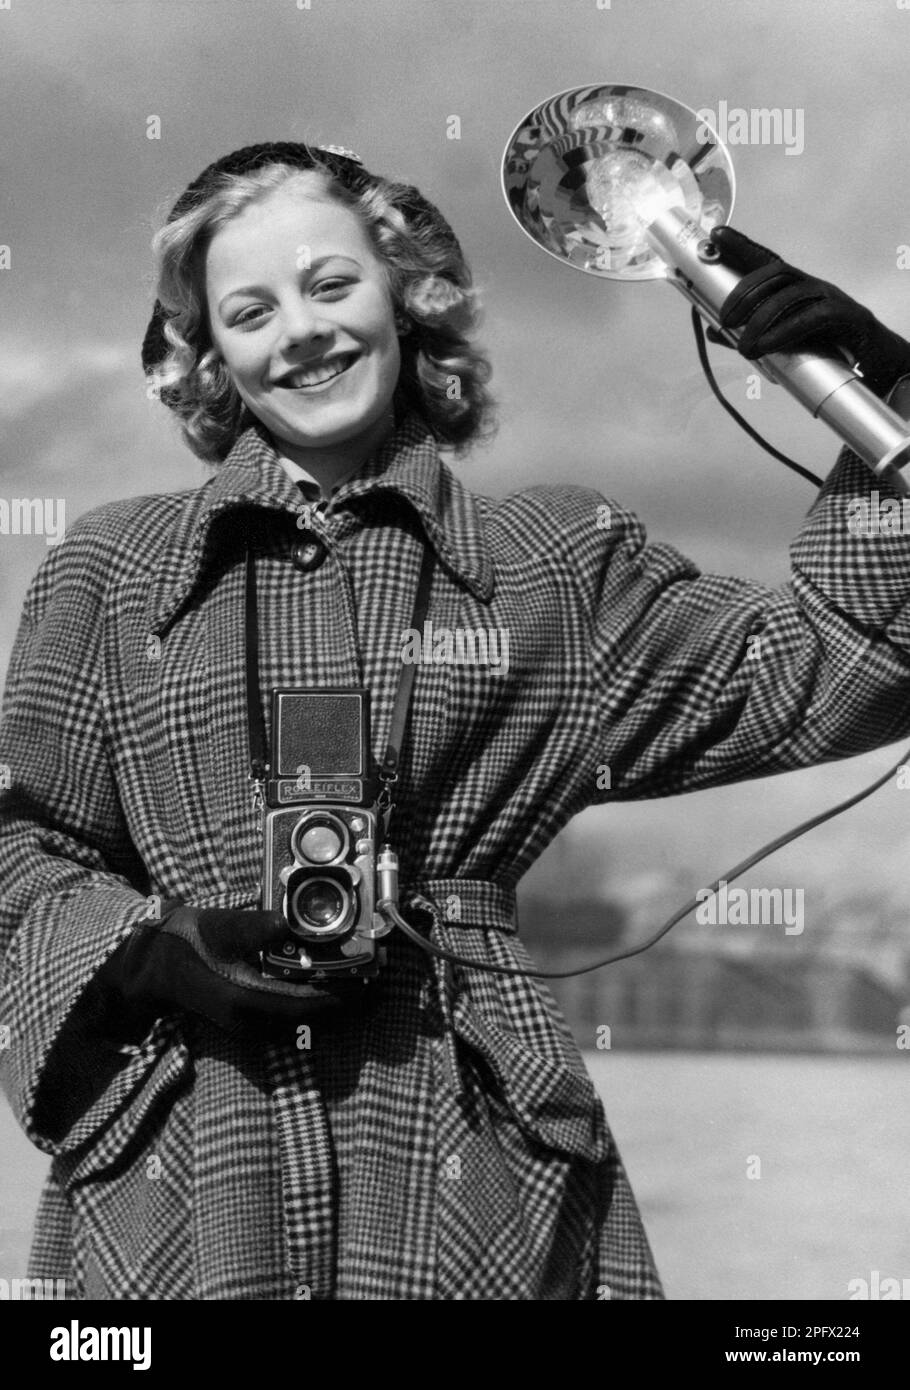 Amateurfotograf in den 1950er. Die junge Schauspielerin Sangrid Nerf fotografiert an einem Frühlingstag. Bei der Kamera handelt es sich um eine Rolleiflex-Kamera des deutschen Unternehmens Rollei für 60-mm-Filme. Schweden 1950. Stockfoto